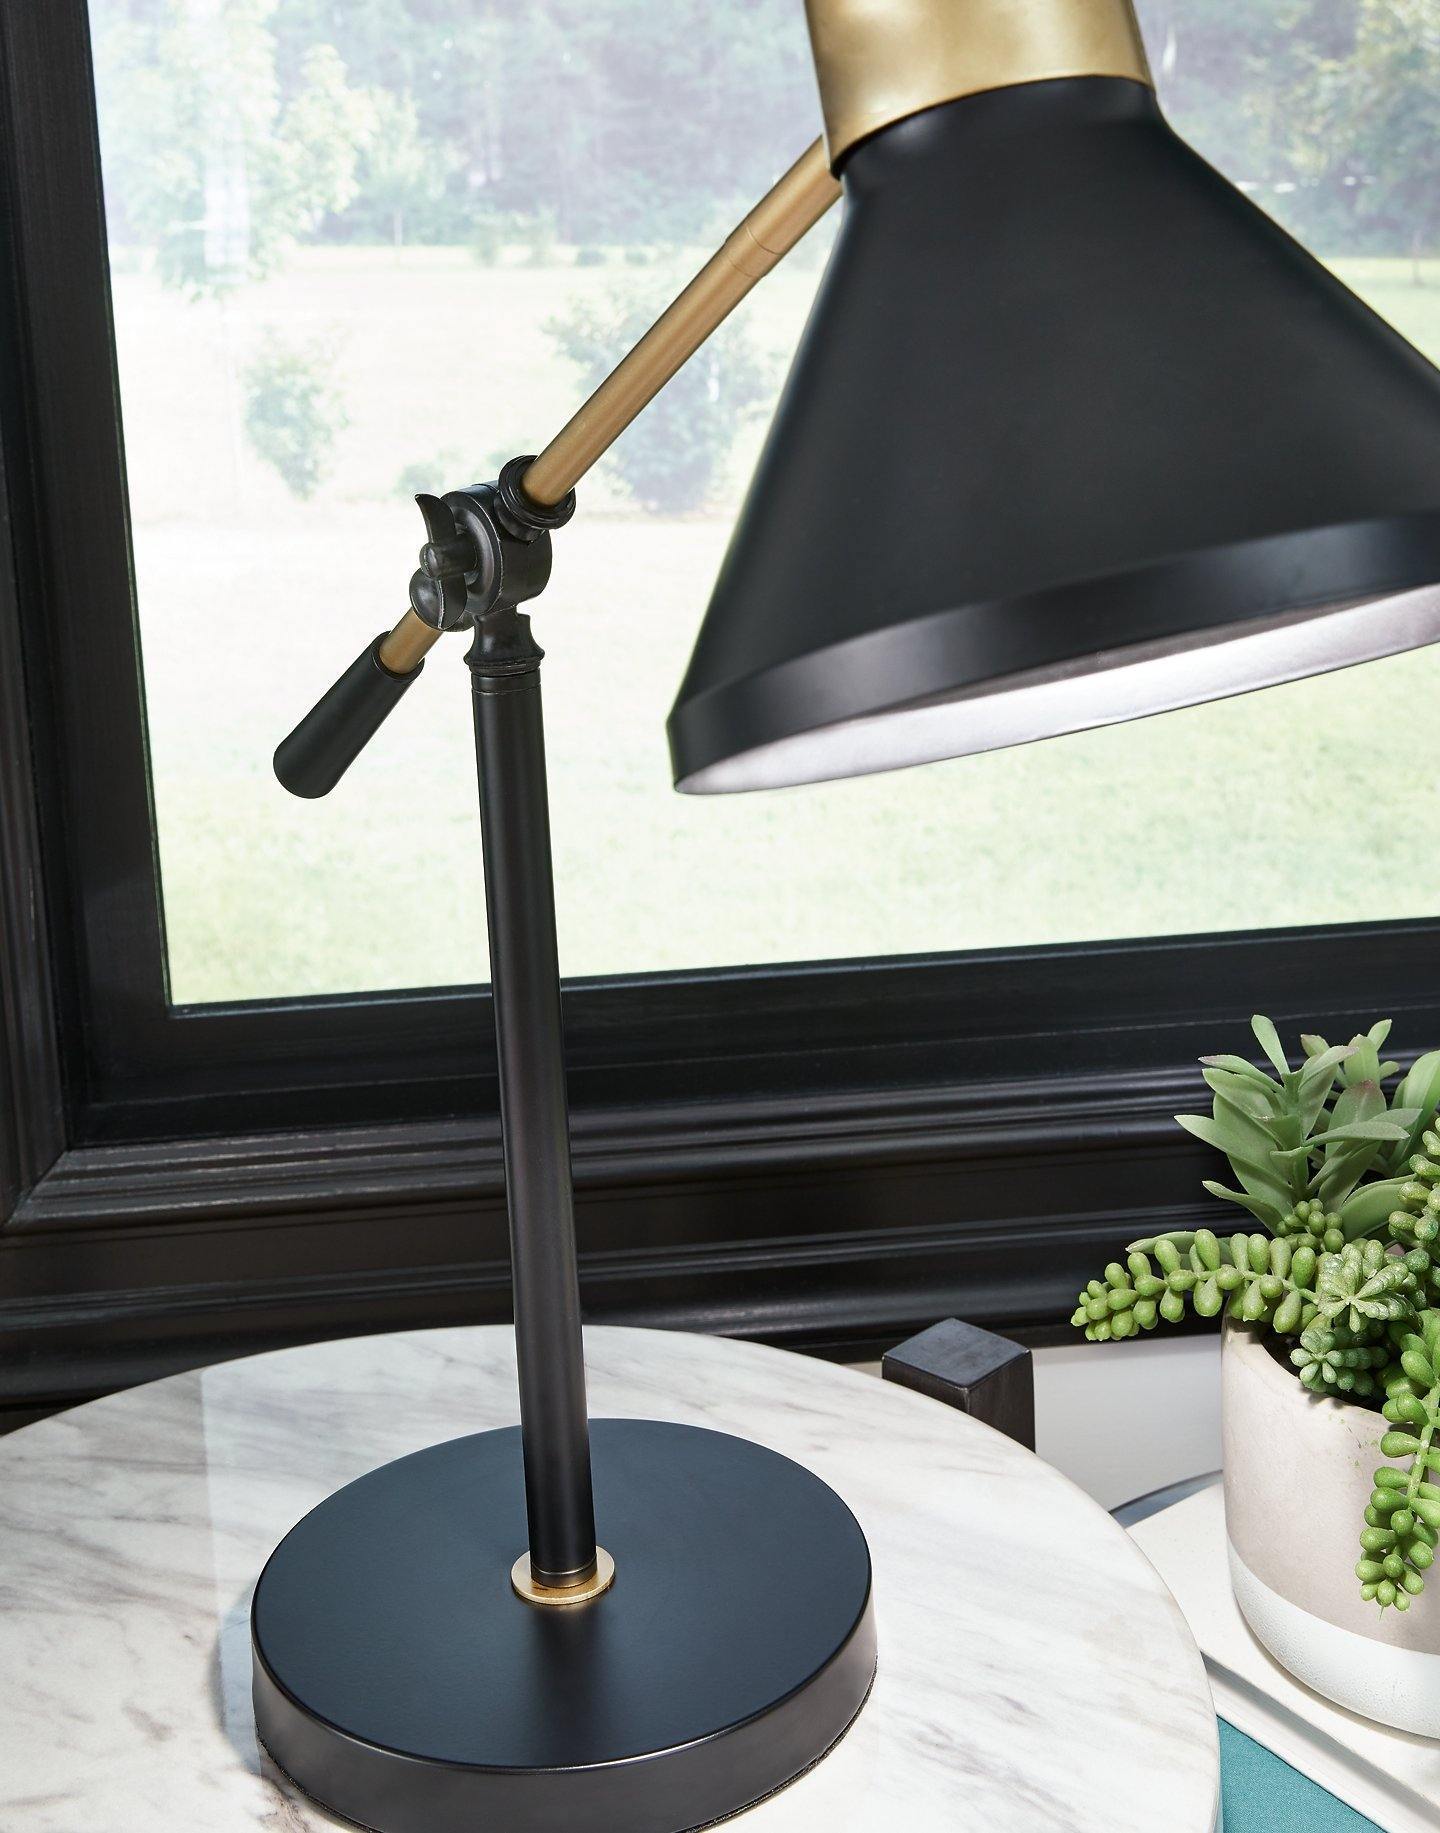 Black & Gold Finish Contemporary Desk Lamp